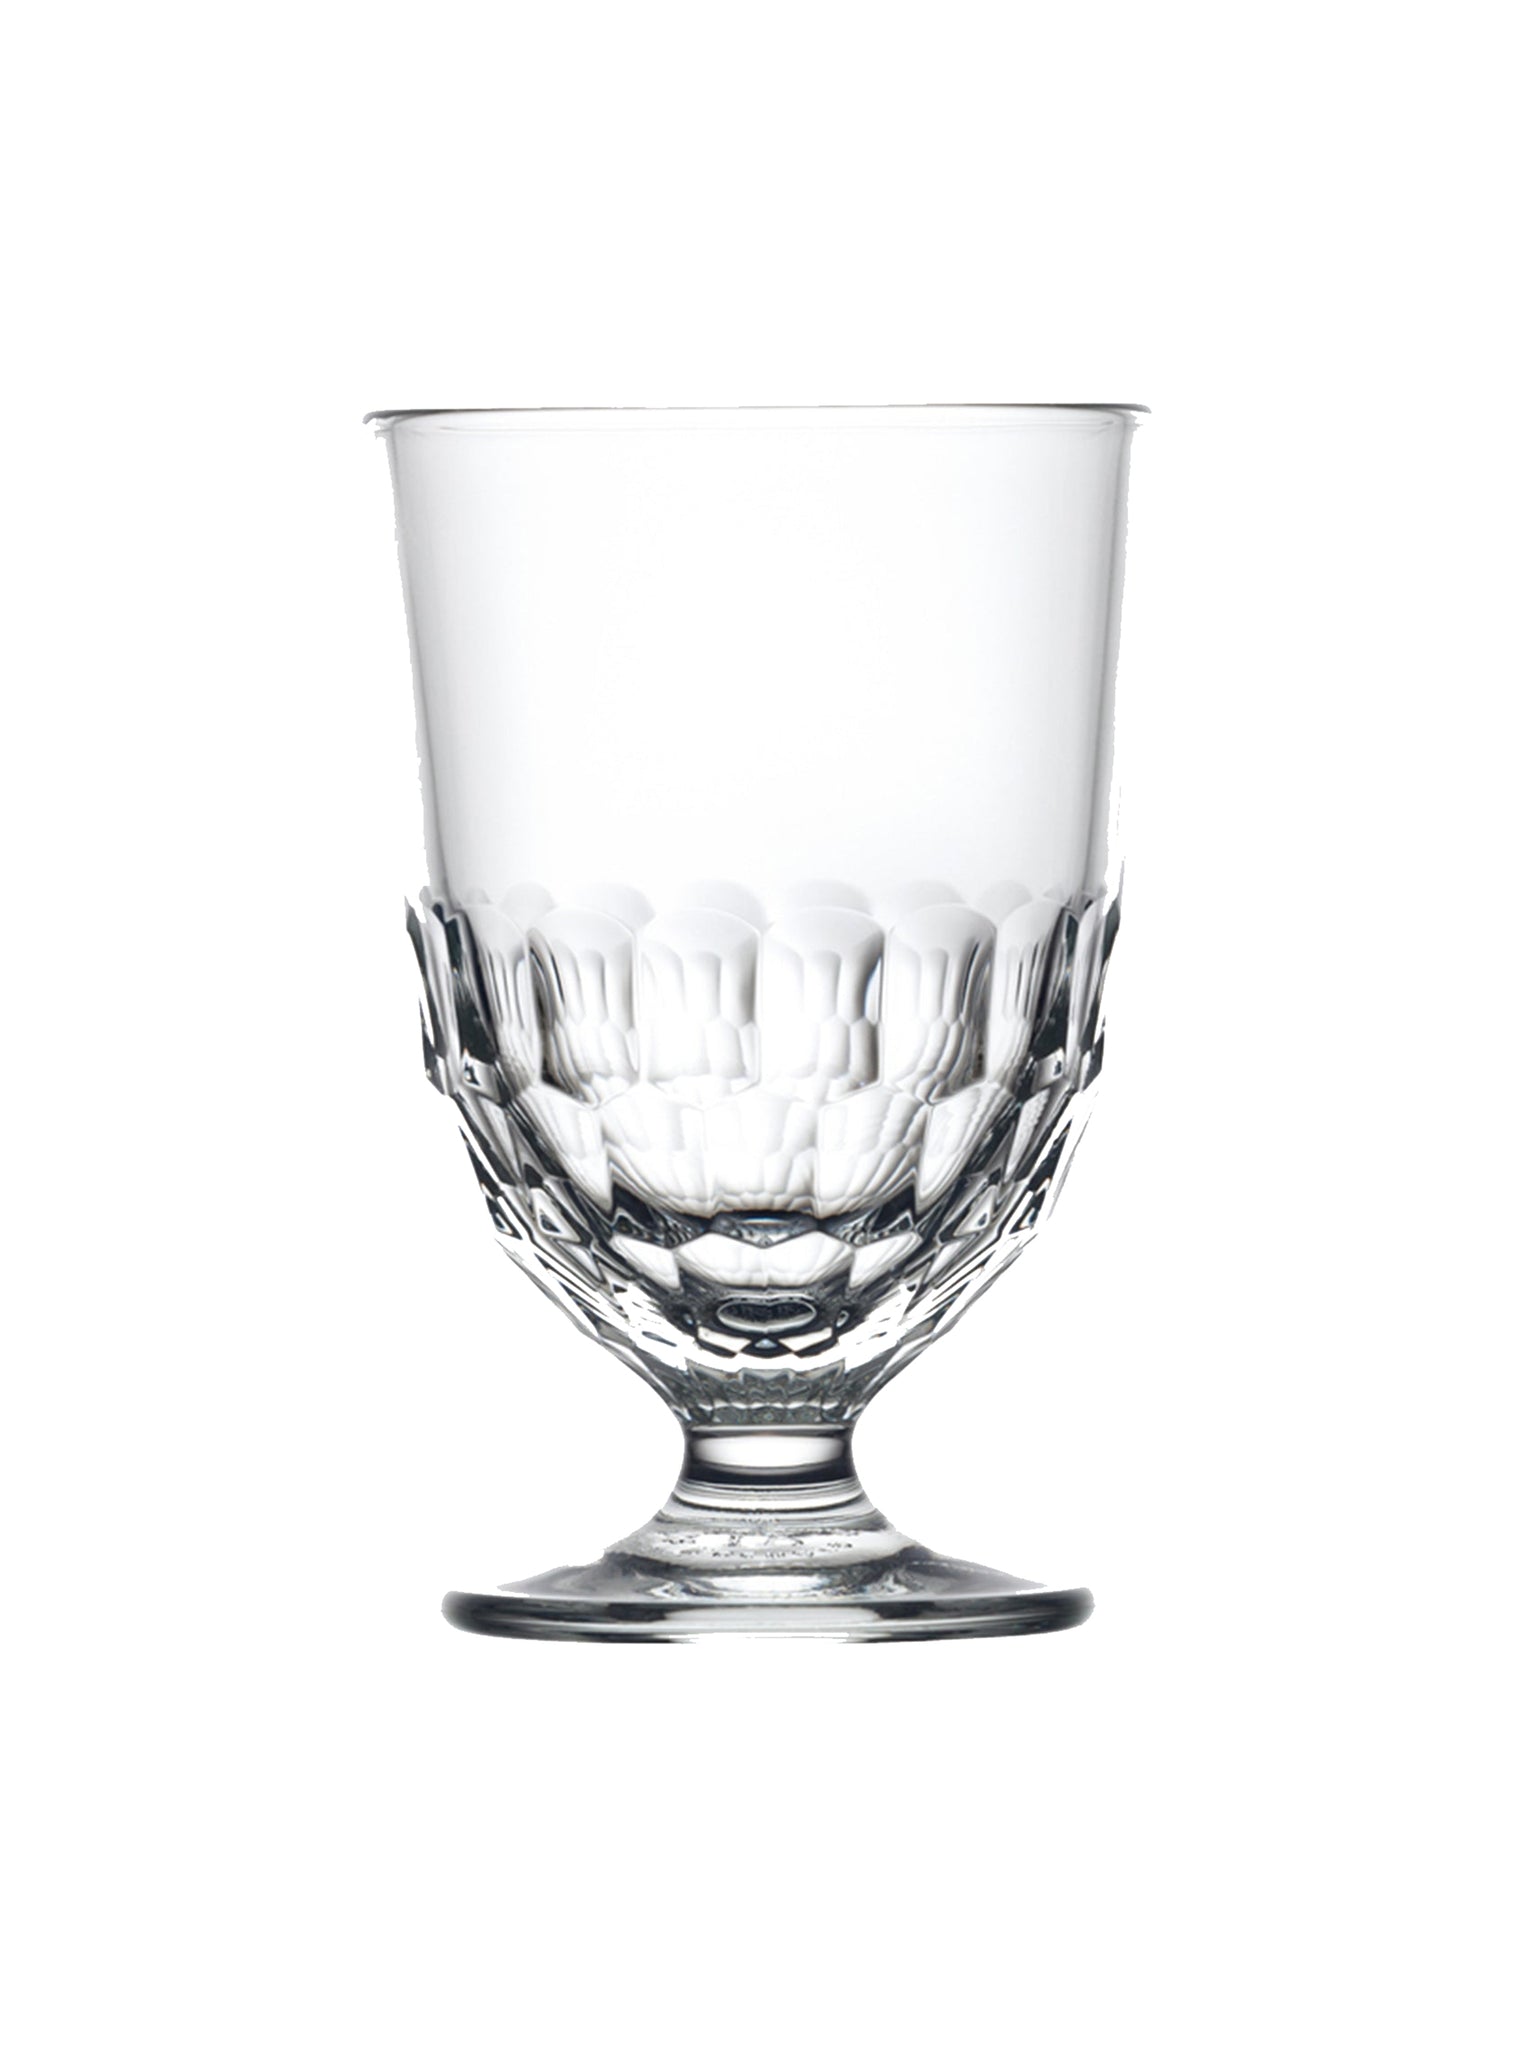 La Rochere Artois Water Glass Weston Table